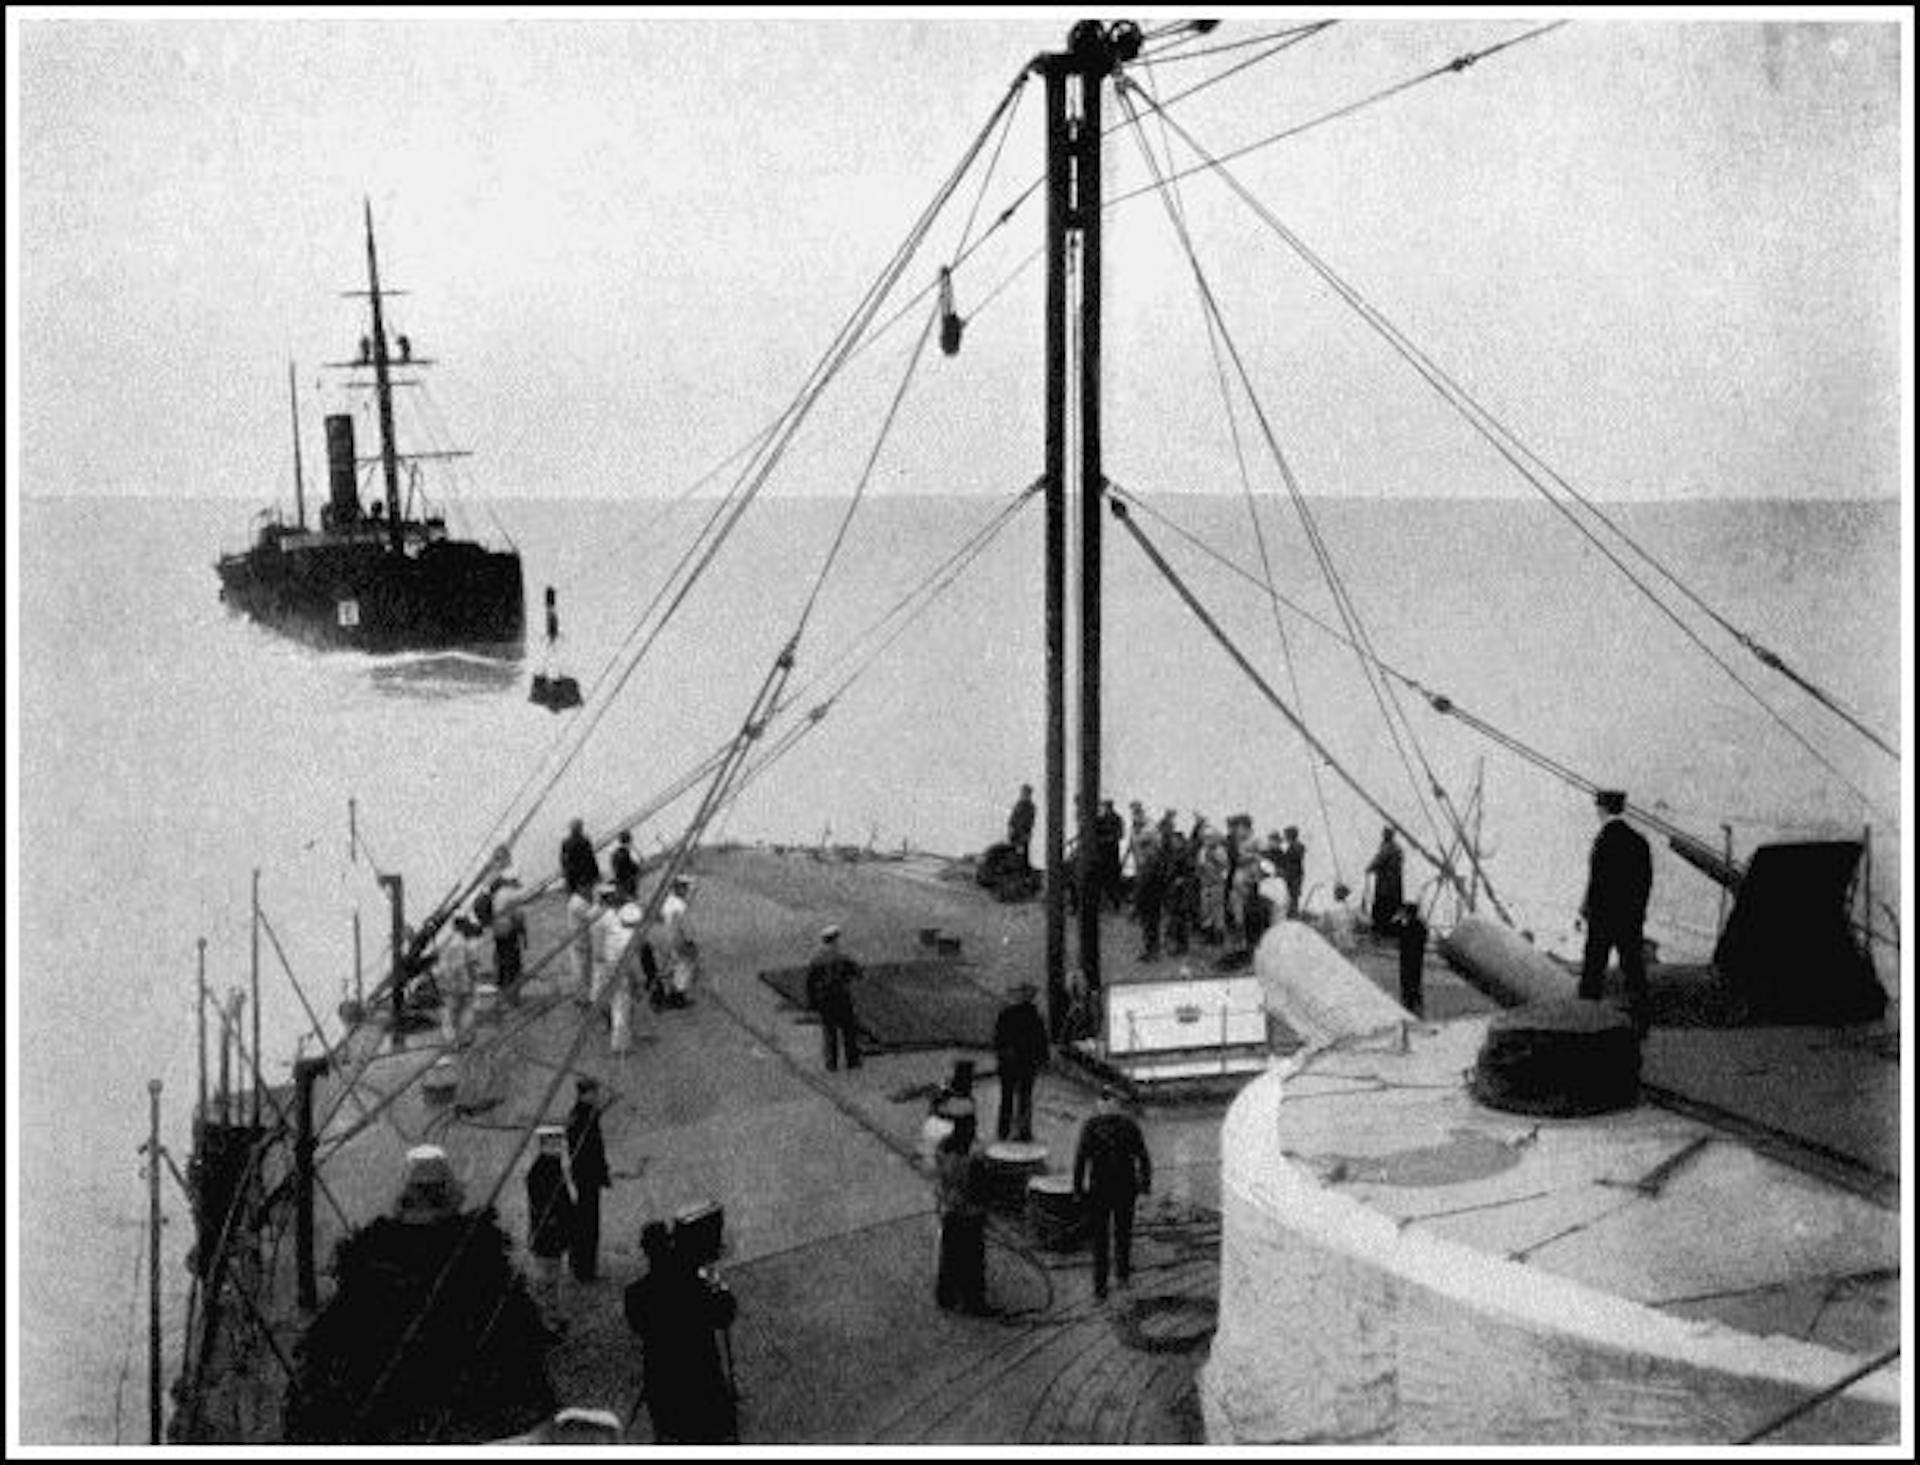 A TEMPERLEY-MILLER MARINE CABLEWAY COALING H.M.S. "TRAFALGAR" AT SEA